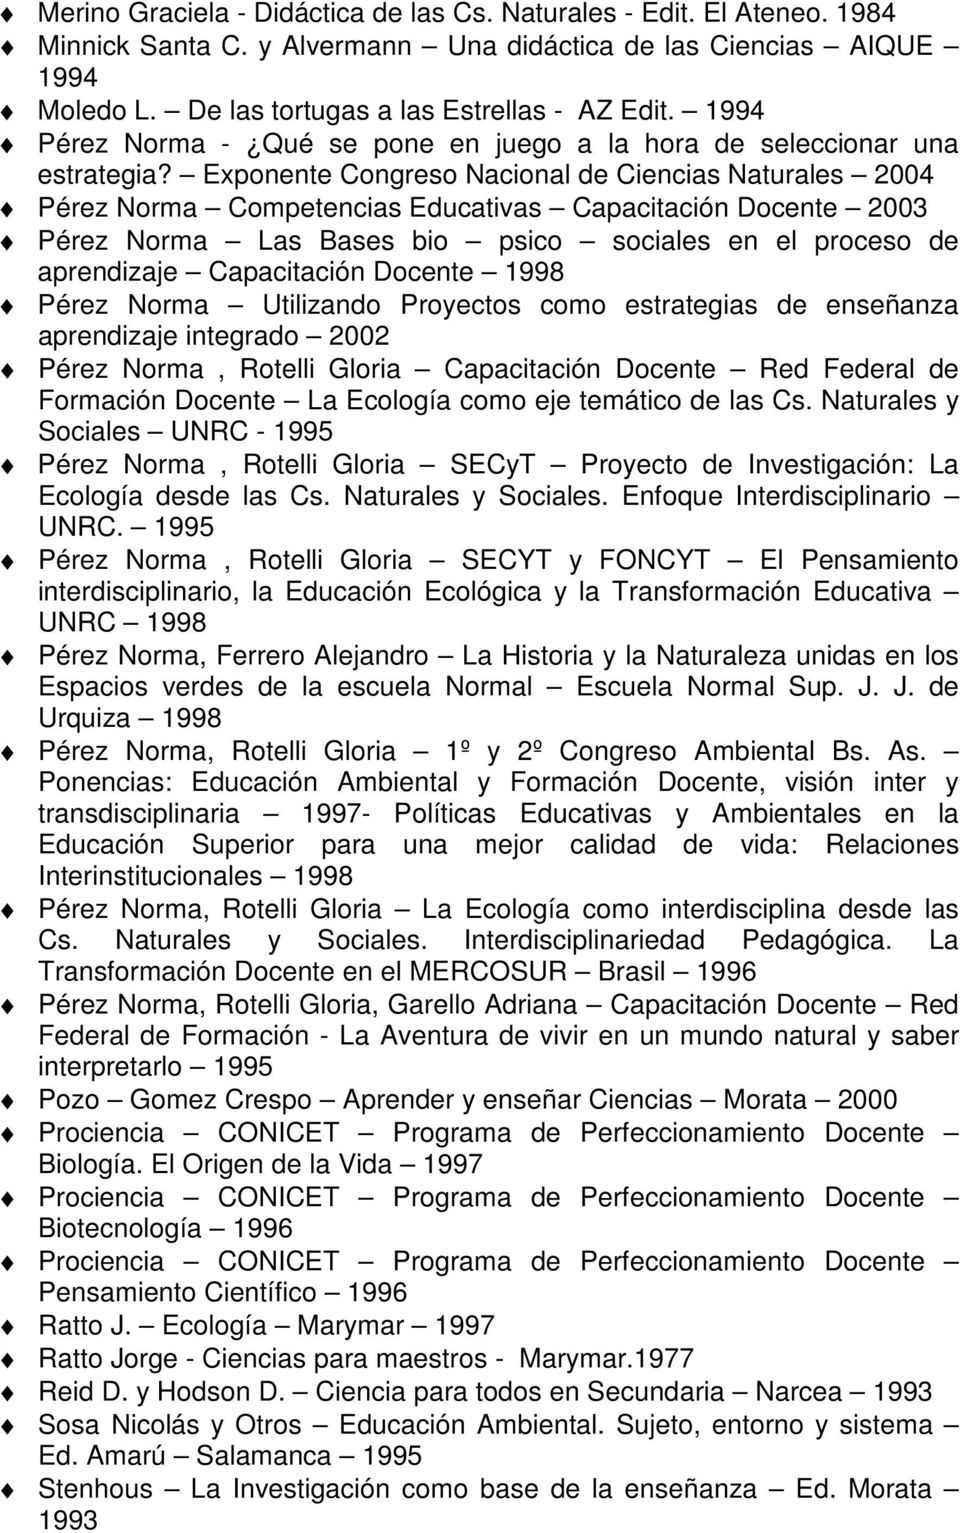 Exponente Congreso Nacional de Ciencias Naturales 2004 Pérez Norma Competencias Educativas Capacitación Docente 2003 Pérez Norma Las Bases bio psico sociales en el proceso de aprendizaje Capacitación